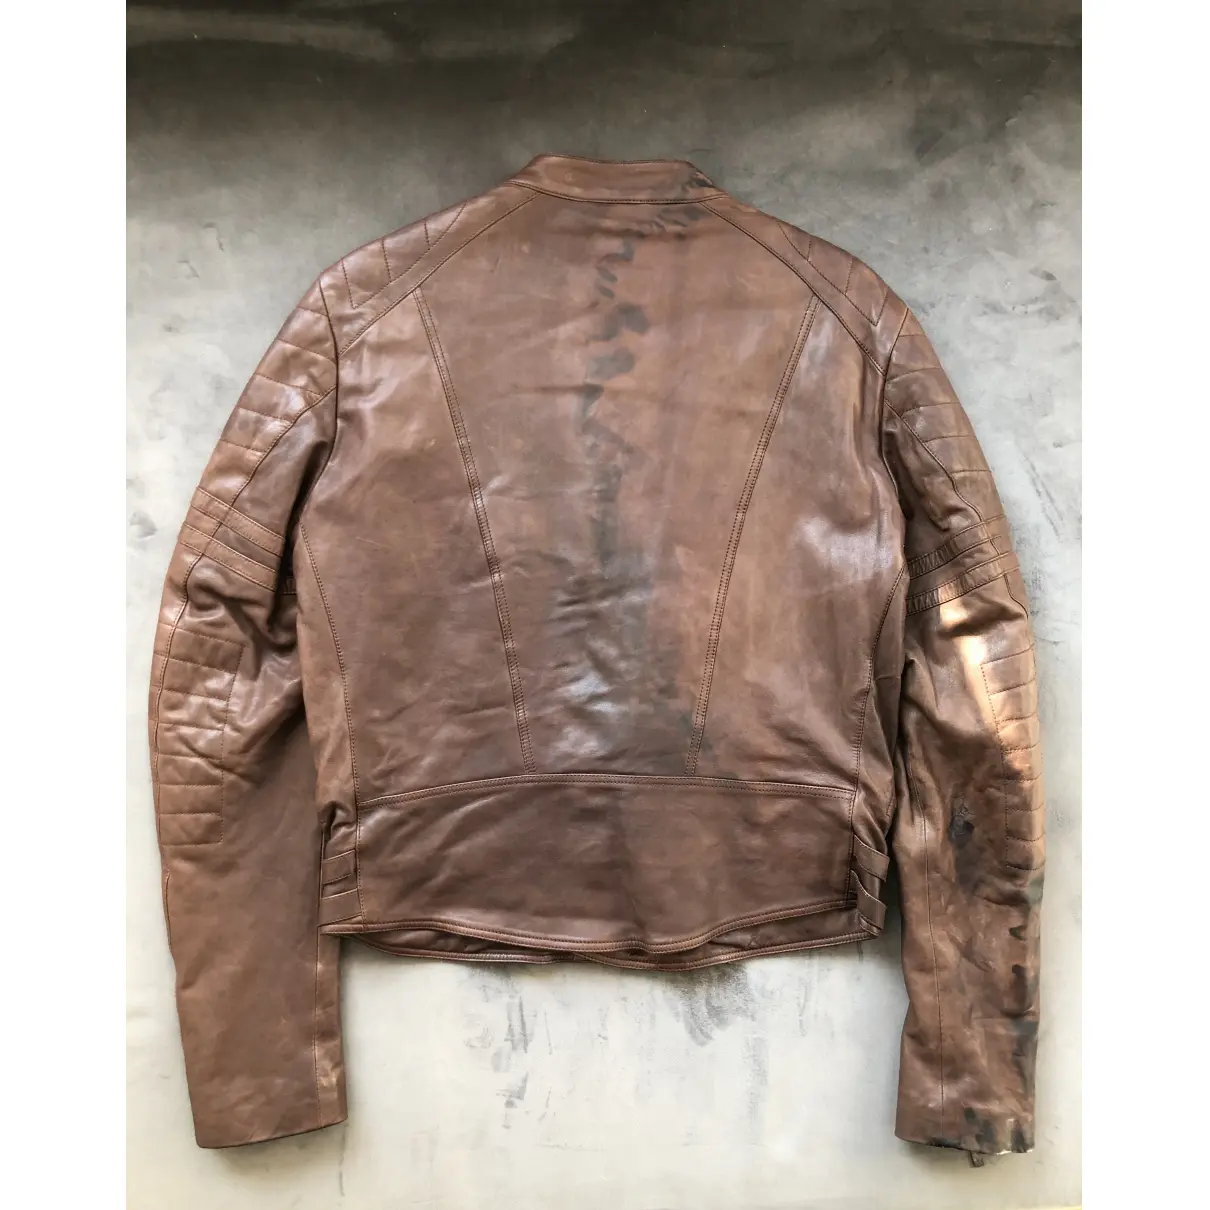 Buy John Galliano Leather jacket online